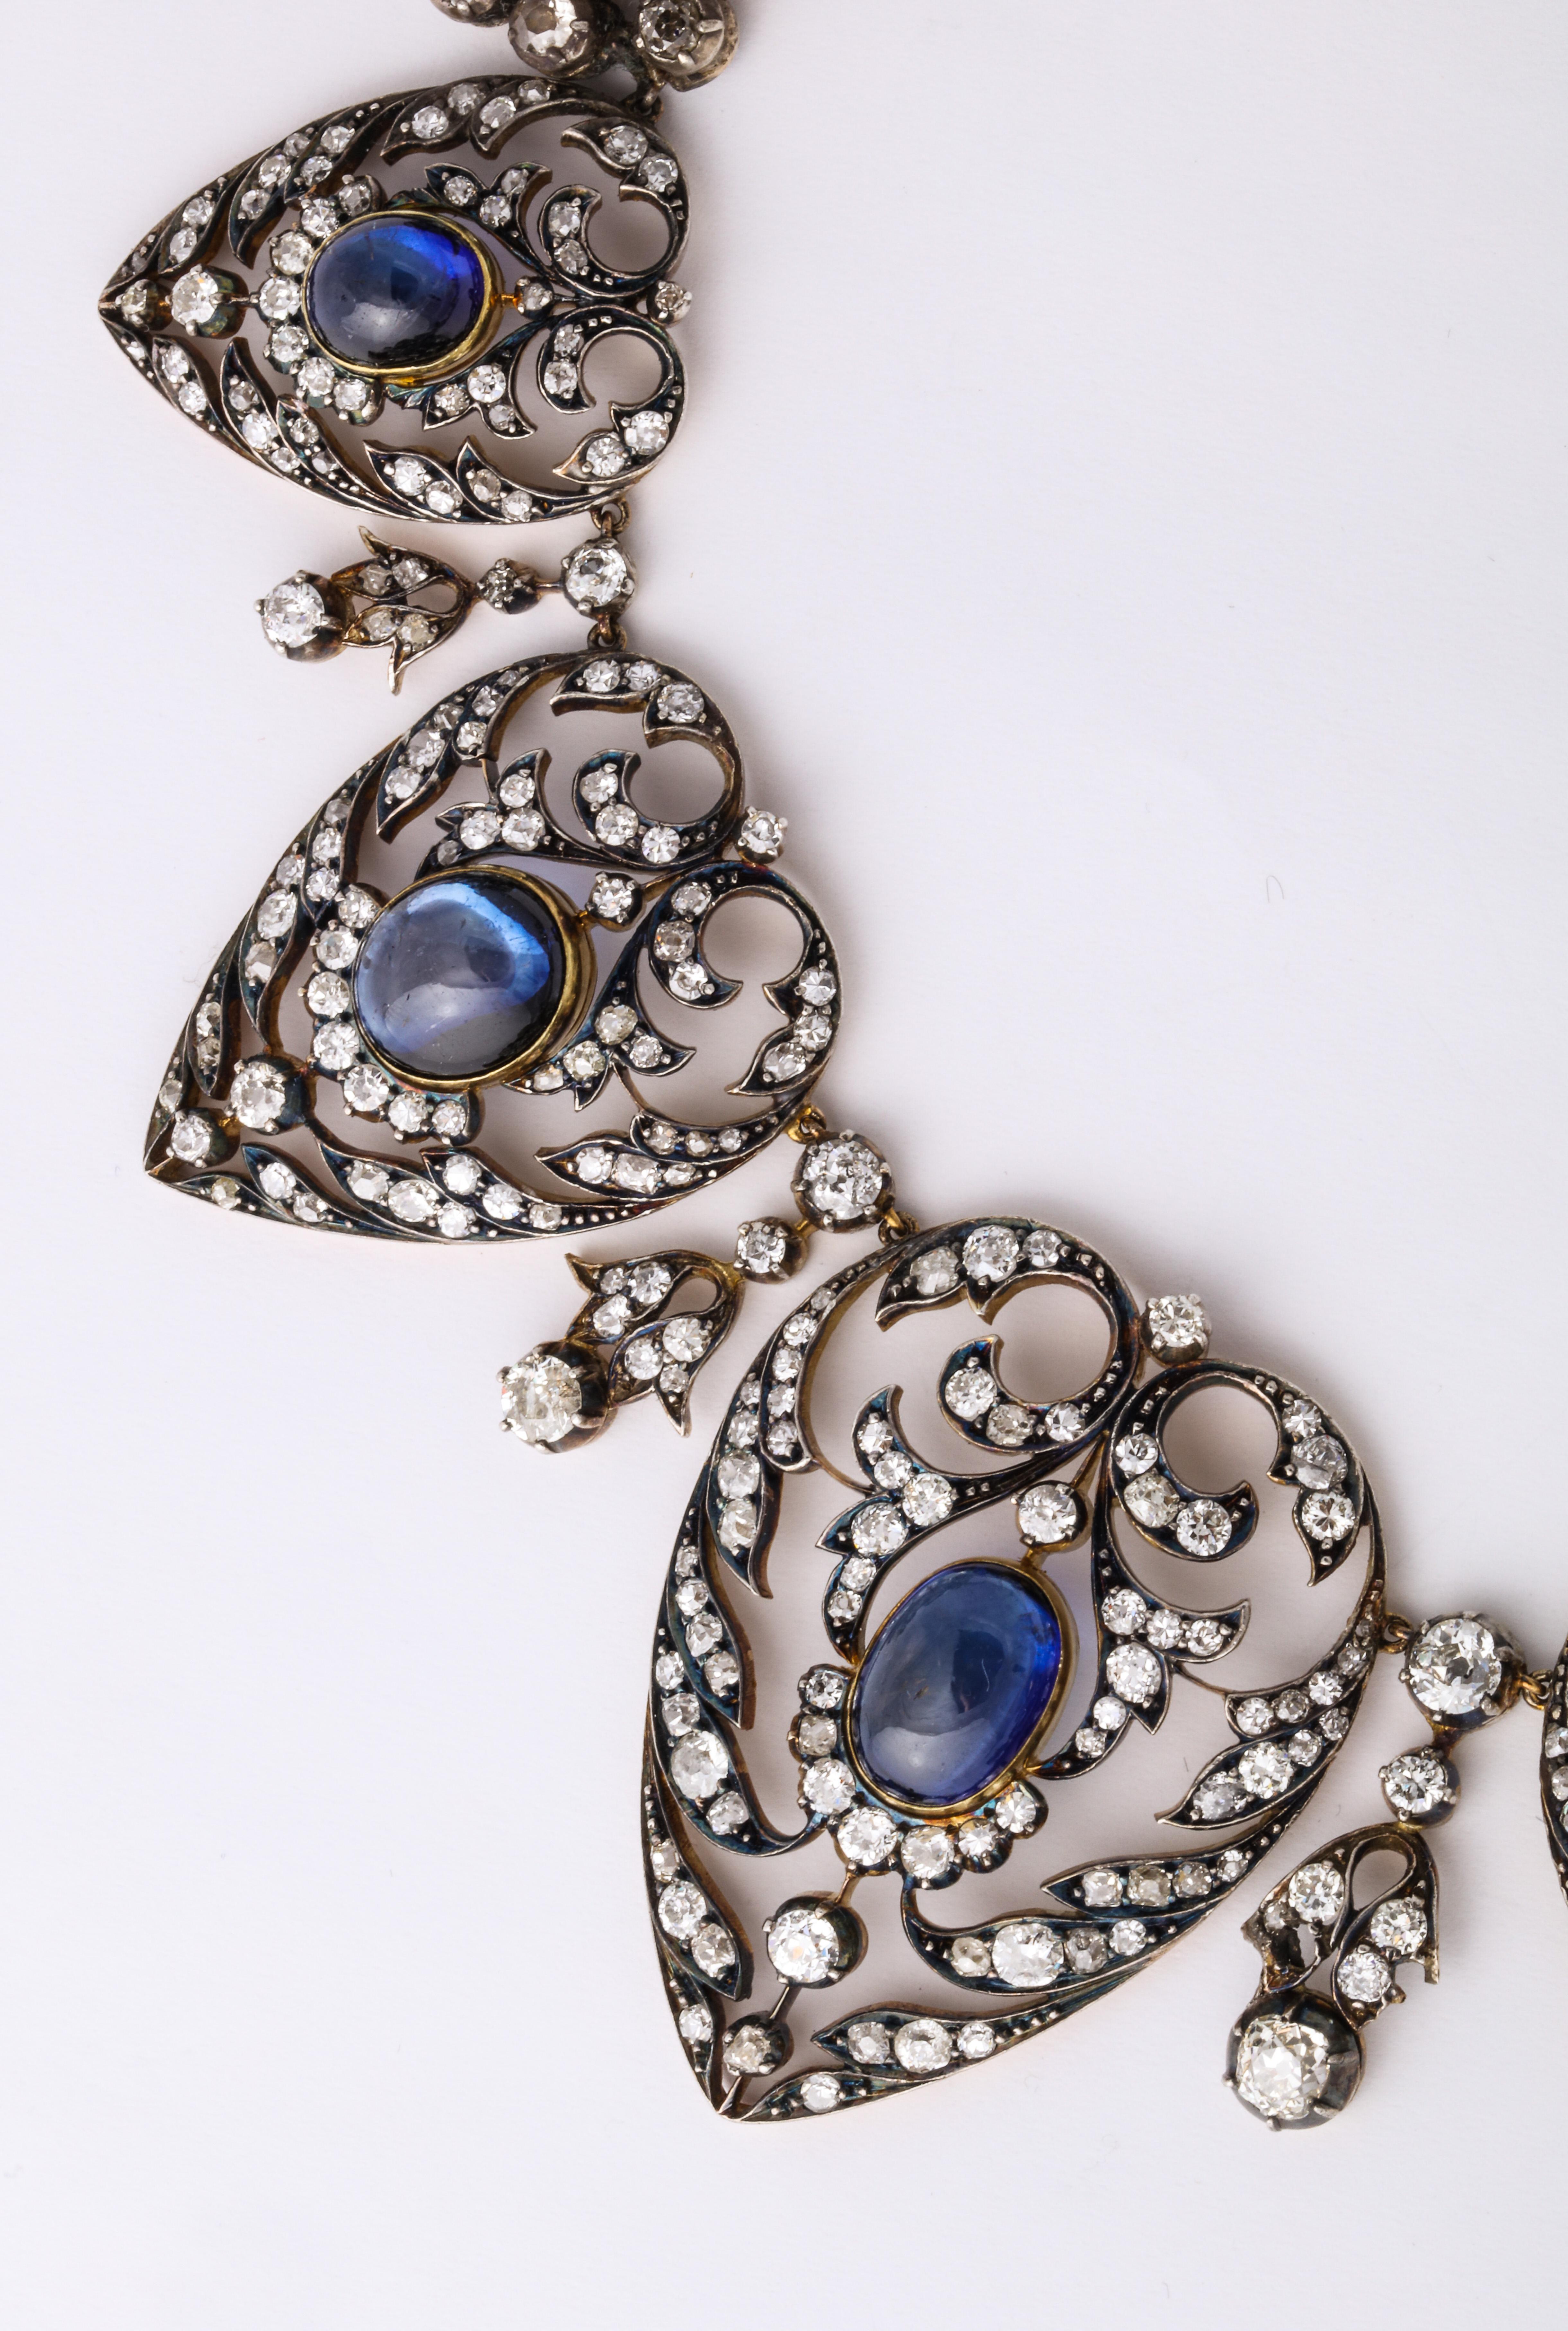 Un collier unique datant de la fin des années 1800 avec des saphirs cabochons d'une qualité stupéfiante entourés de diamants de mine ancienne.

Représenté en pleine page dans l'ouvrage 